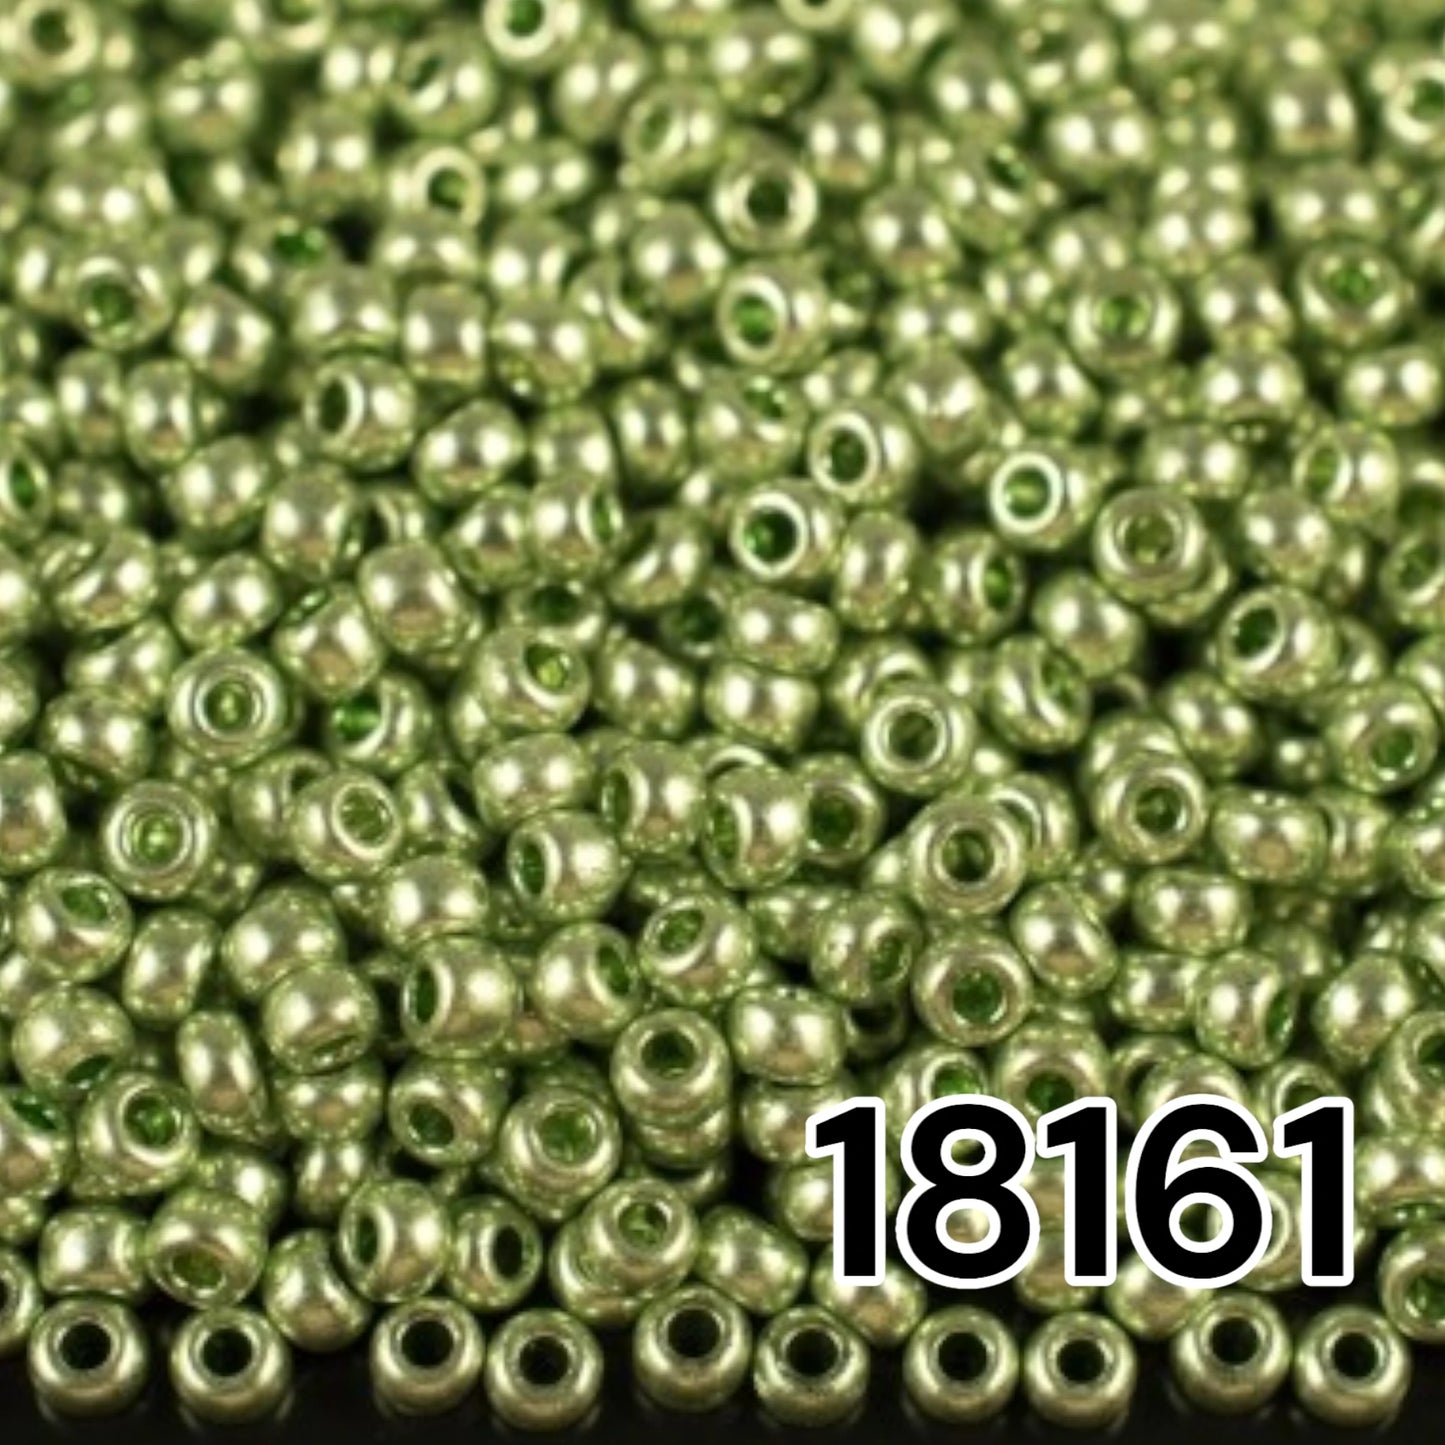 18161 Rocailles tchèques PRECIOSA ronde 10/0 Vert métallisé. Métallique - Solgel.